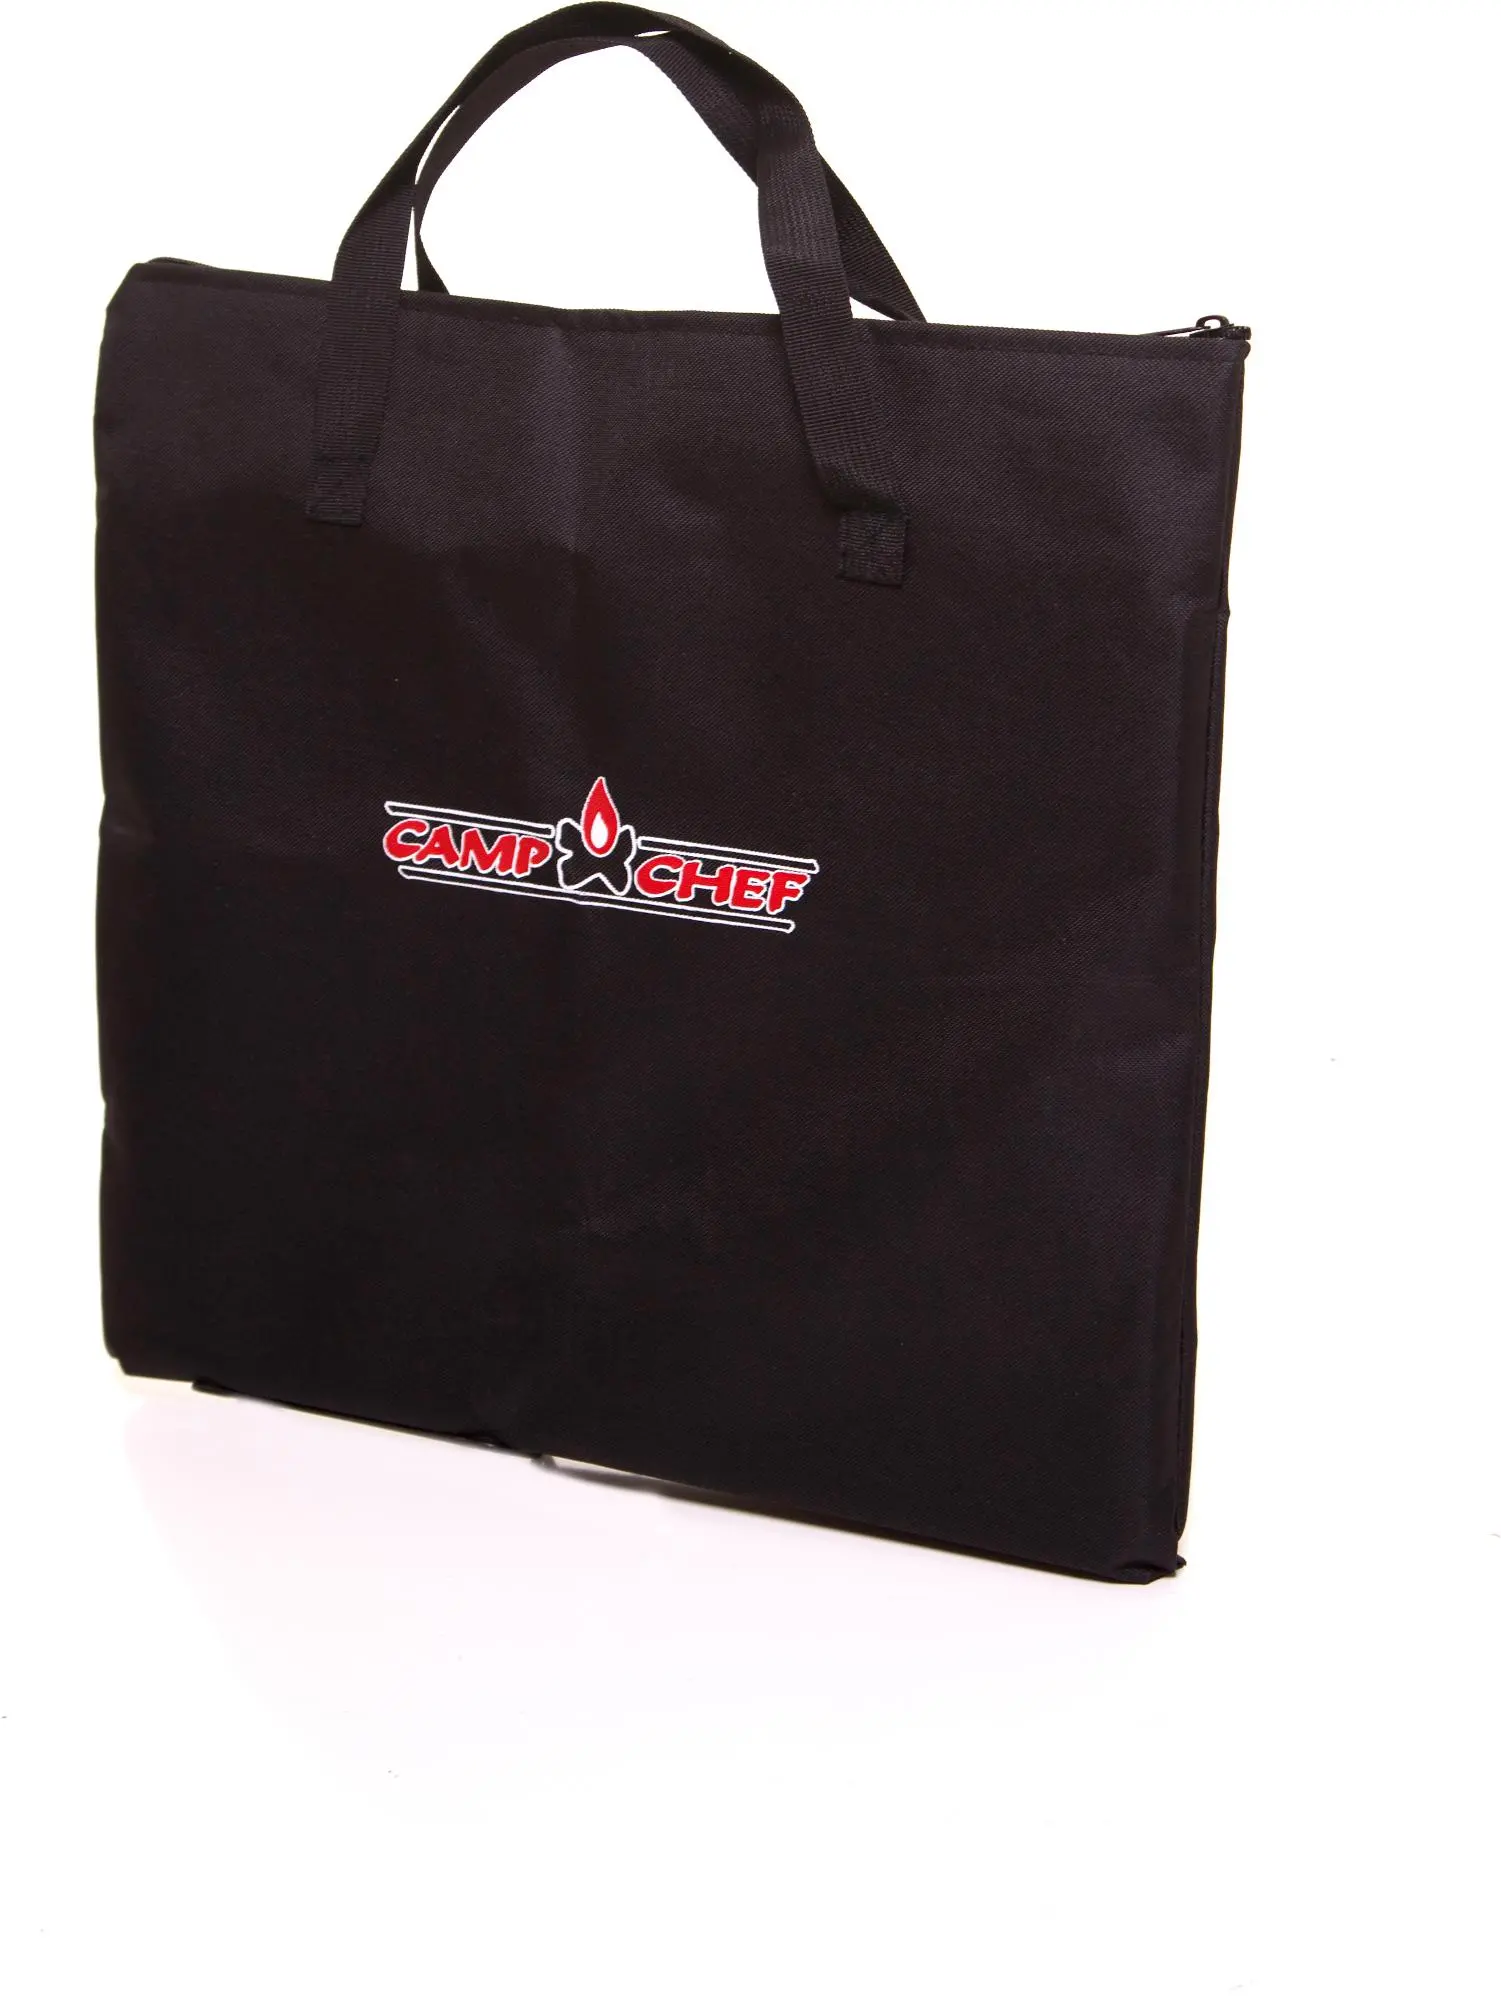 Griddle Bag (16 Inch) - Carry Case